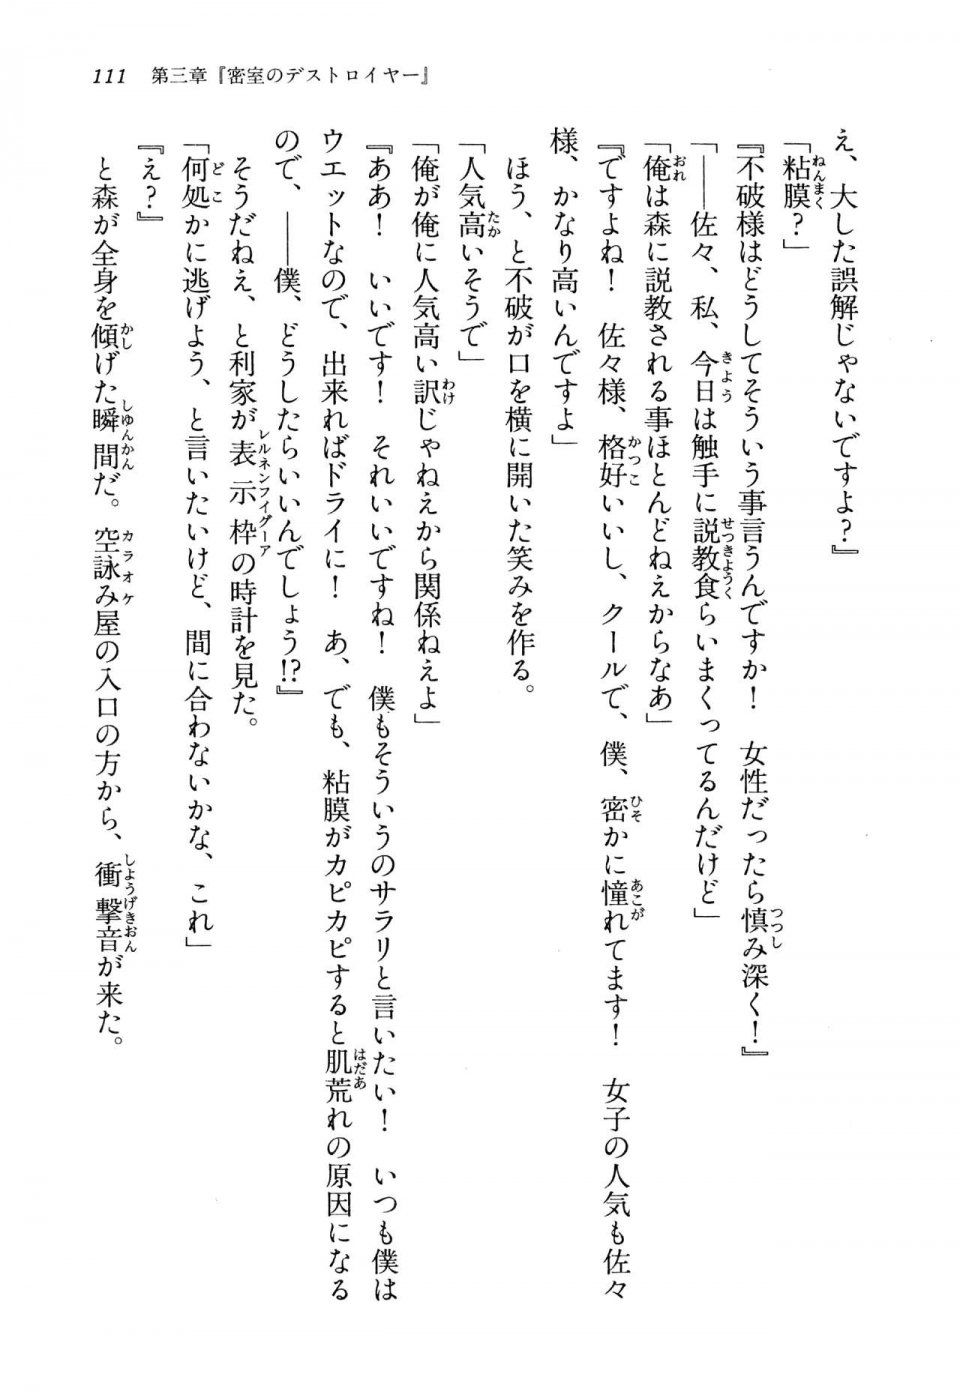 Kyoukai Senjou no Horizon LN Vol 13(6A) - Photo #111